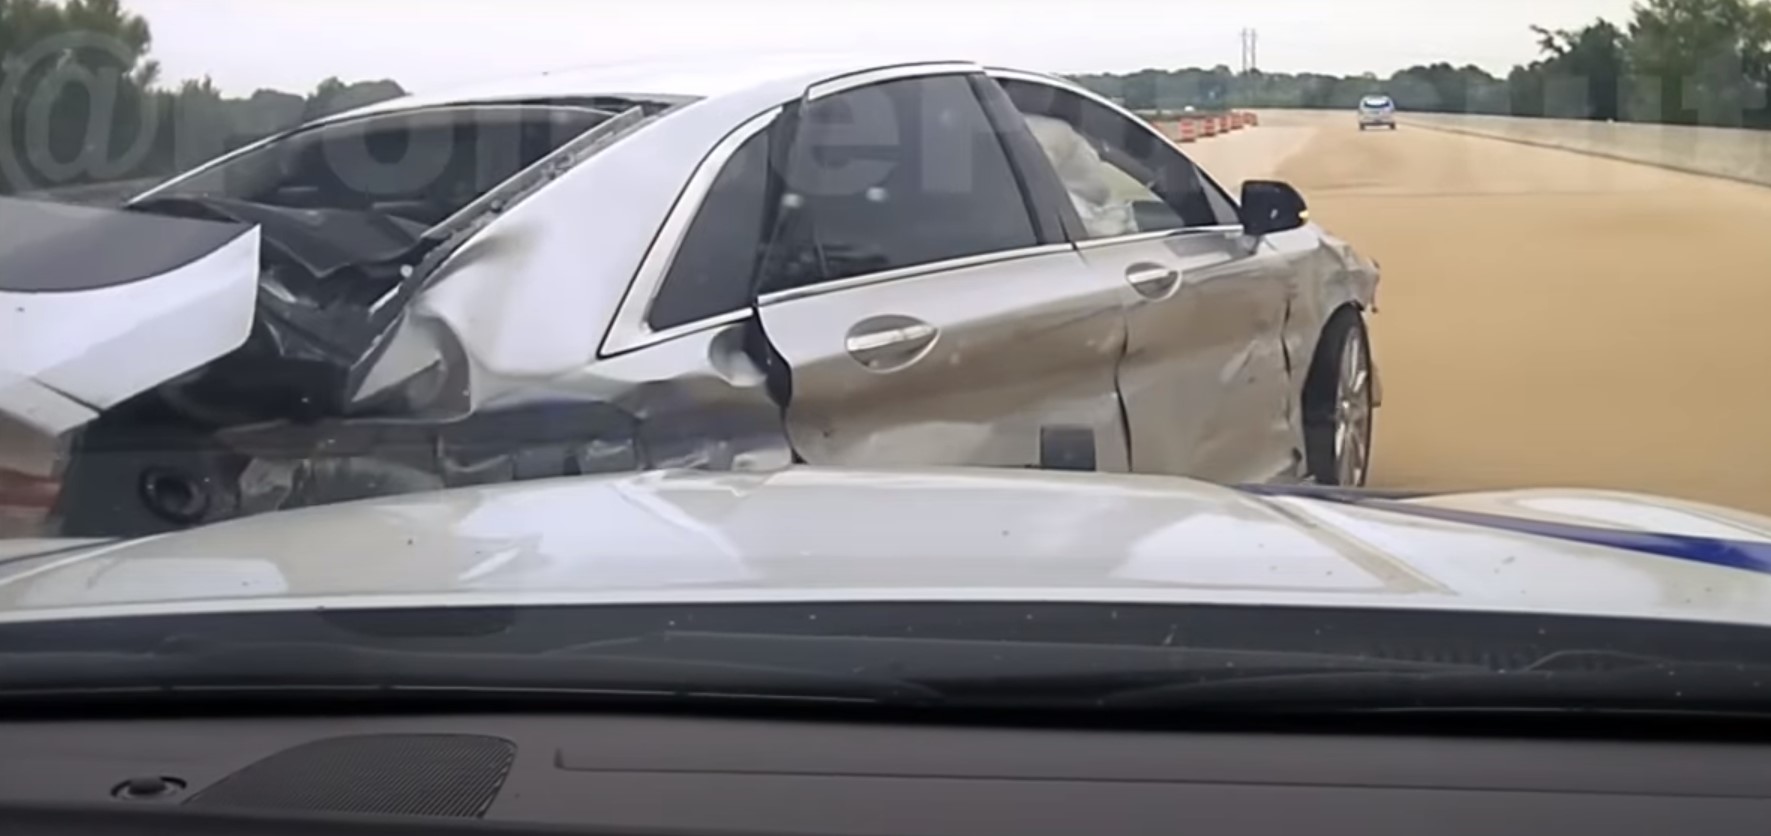 Manobra incrível da polícia americana despedaça carro de bandido